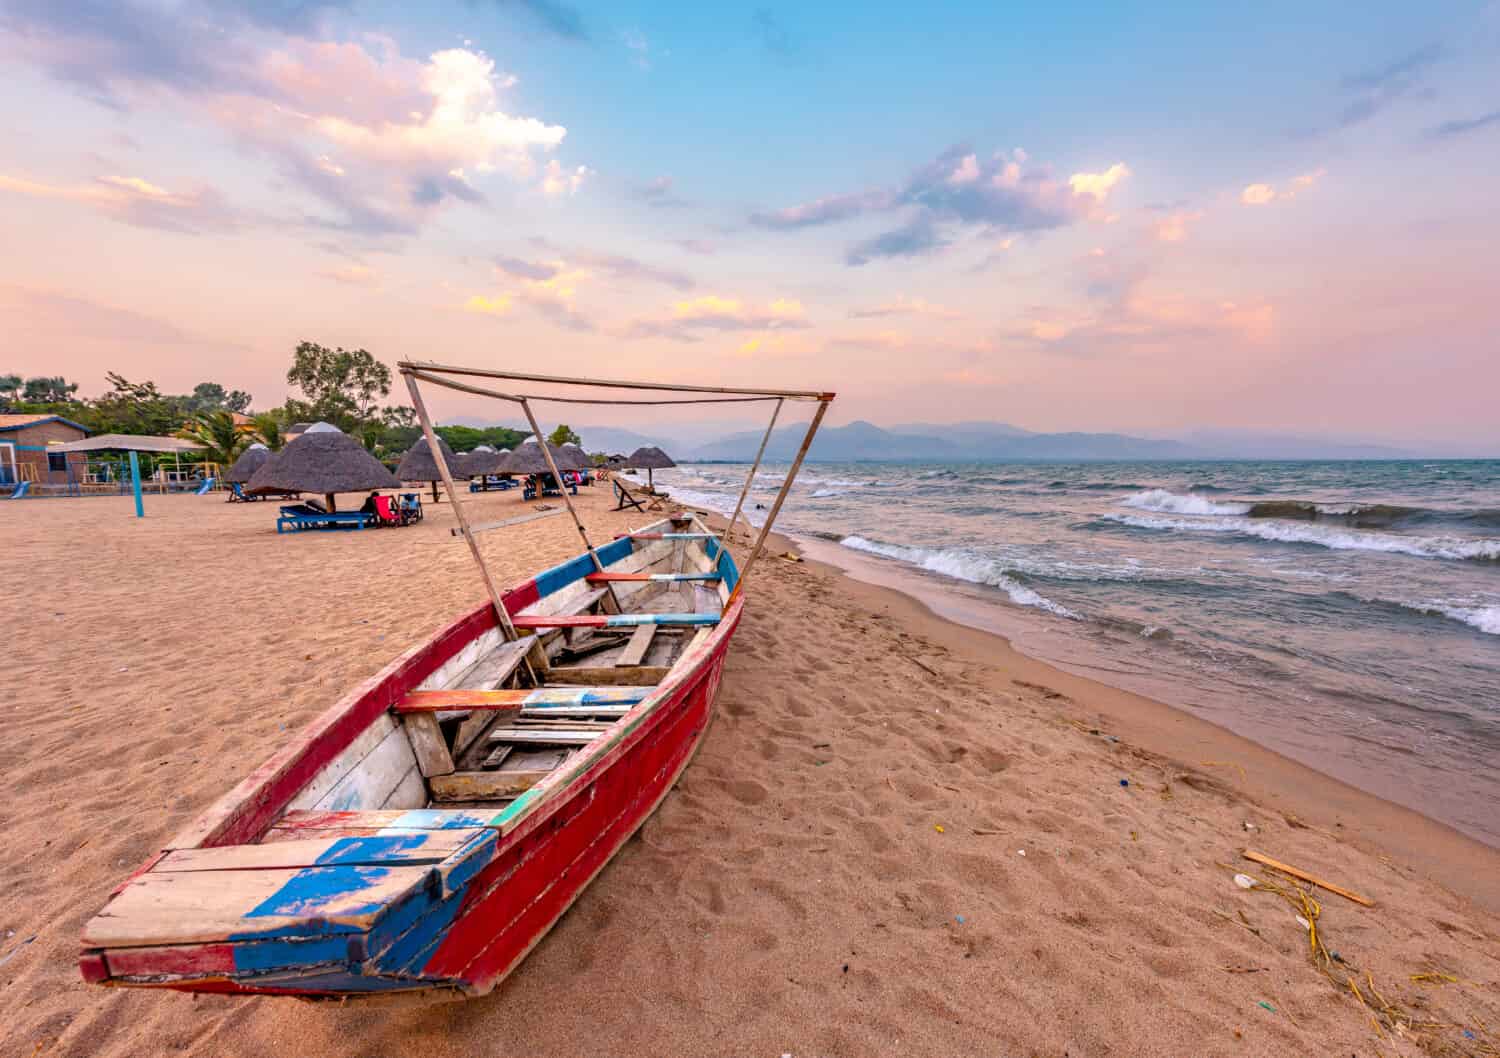 Burundi Bujumbura lago Tanganica, cielo nuvoloso ventoso e spiaggia di sabbia sul lago marino nell'Africa orientale, tramonto del Burundi con barca di legno.  Tetti africani di paglia sugli ombrelloni